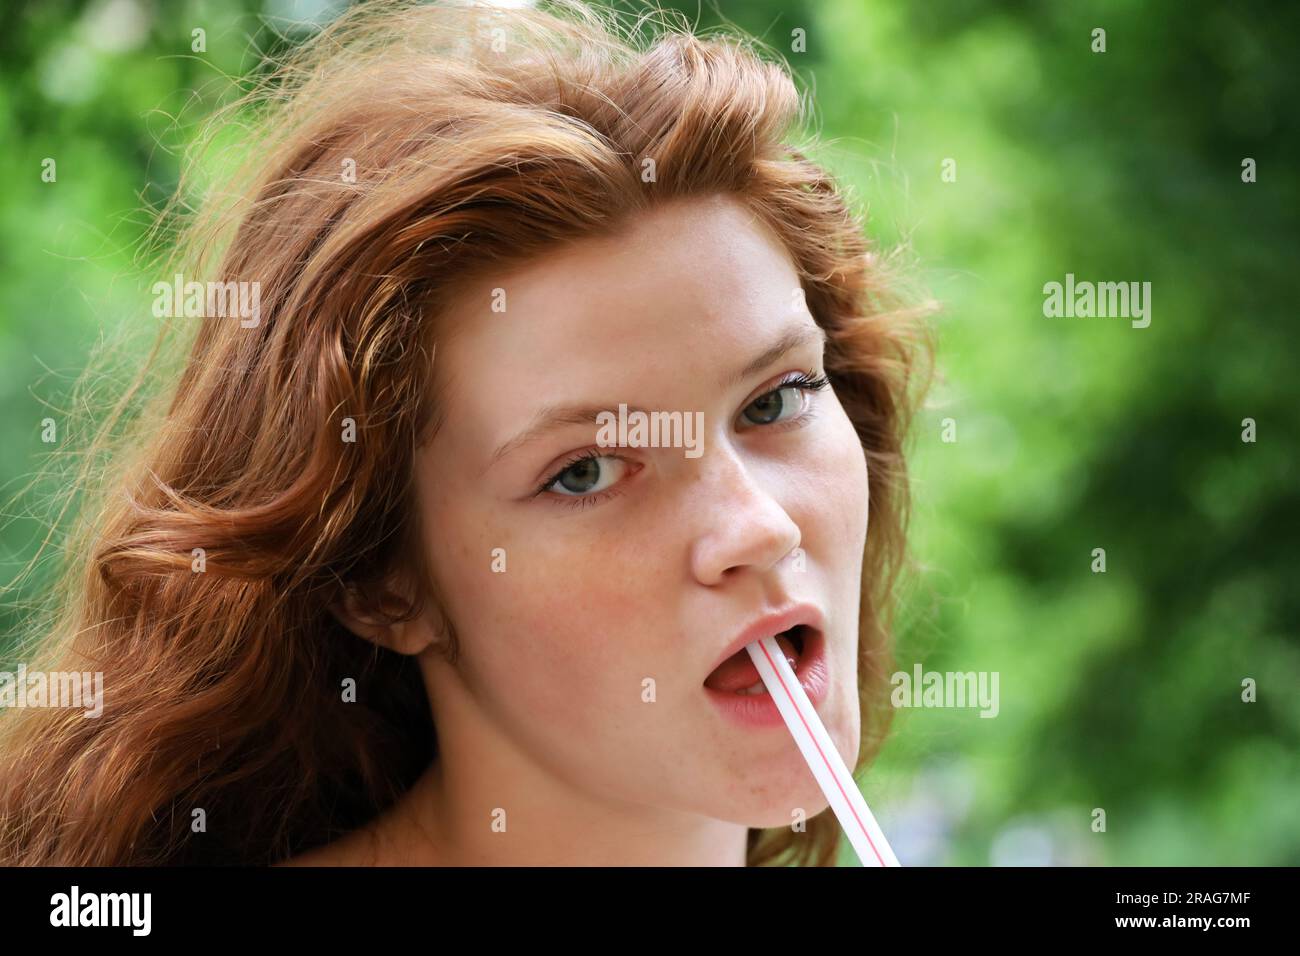 Portrait eines hübschen Ingwermädchens mit langen roten Haaren und Sommersprossen, das im Sommerpark einen Cocktail mit Strohhalm trinkt. Ein junges sinnliches Modell, weibliche Schönheit Stockfoto